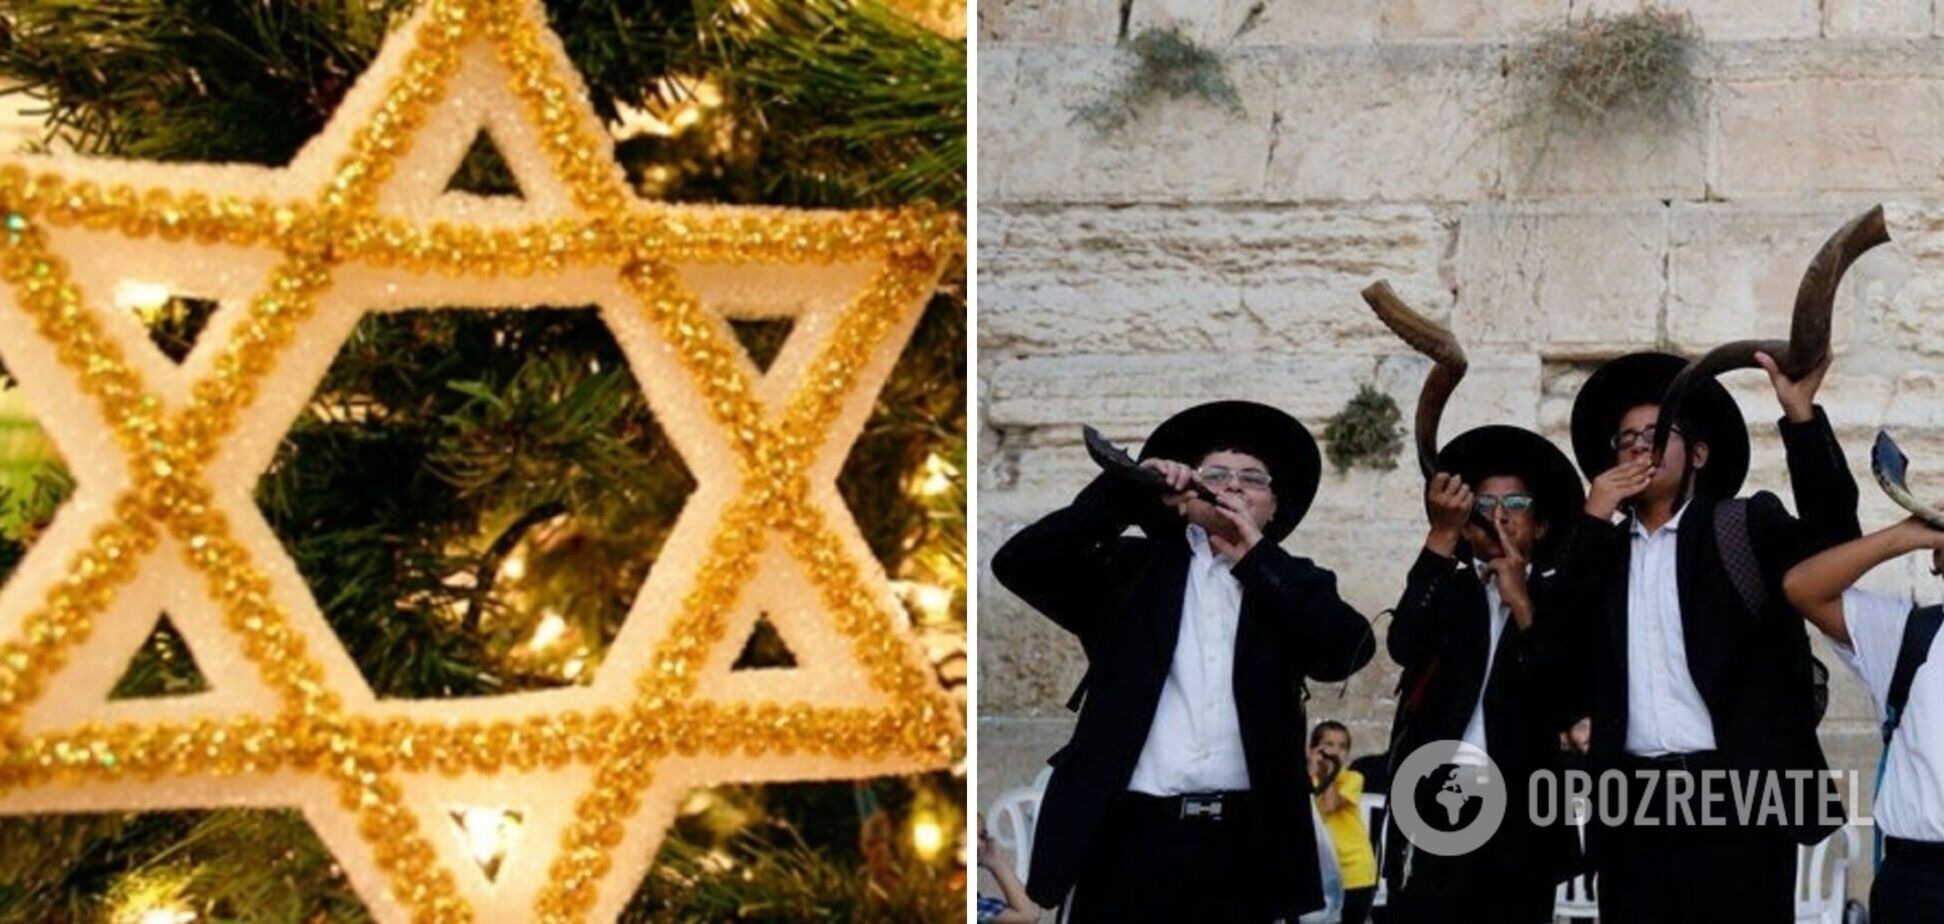 З Рош га-Шана! Щирі привітання з єврейським Новим роком. Картинки